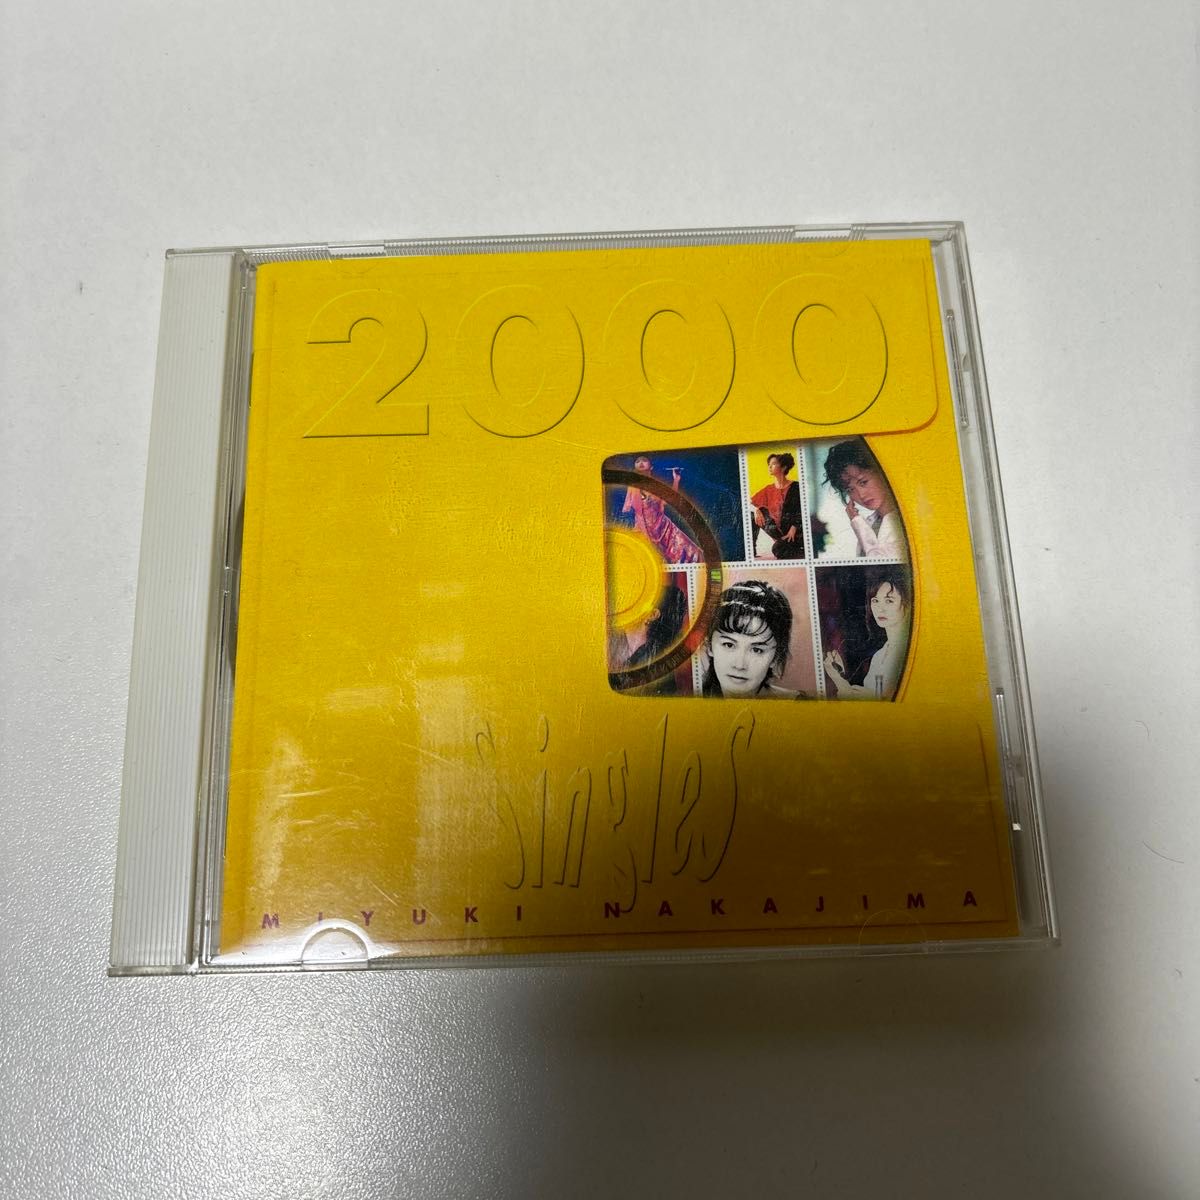 中島みゆき ベストアルバム 【 Singles 2000 】